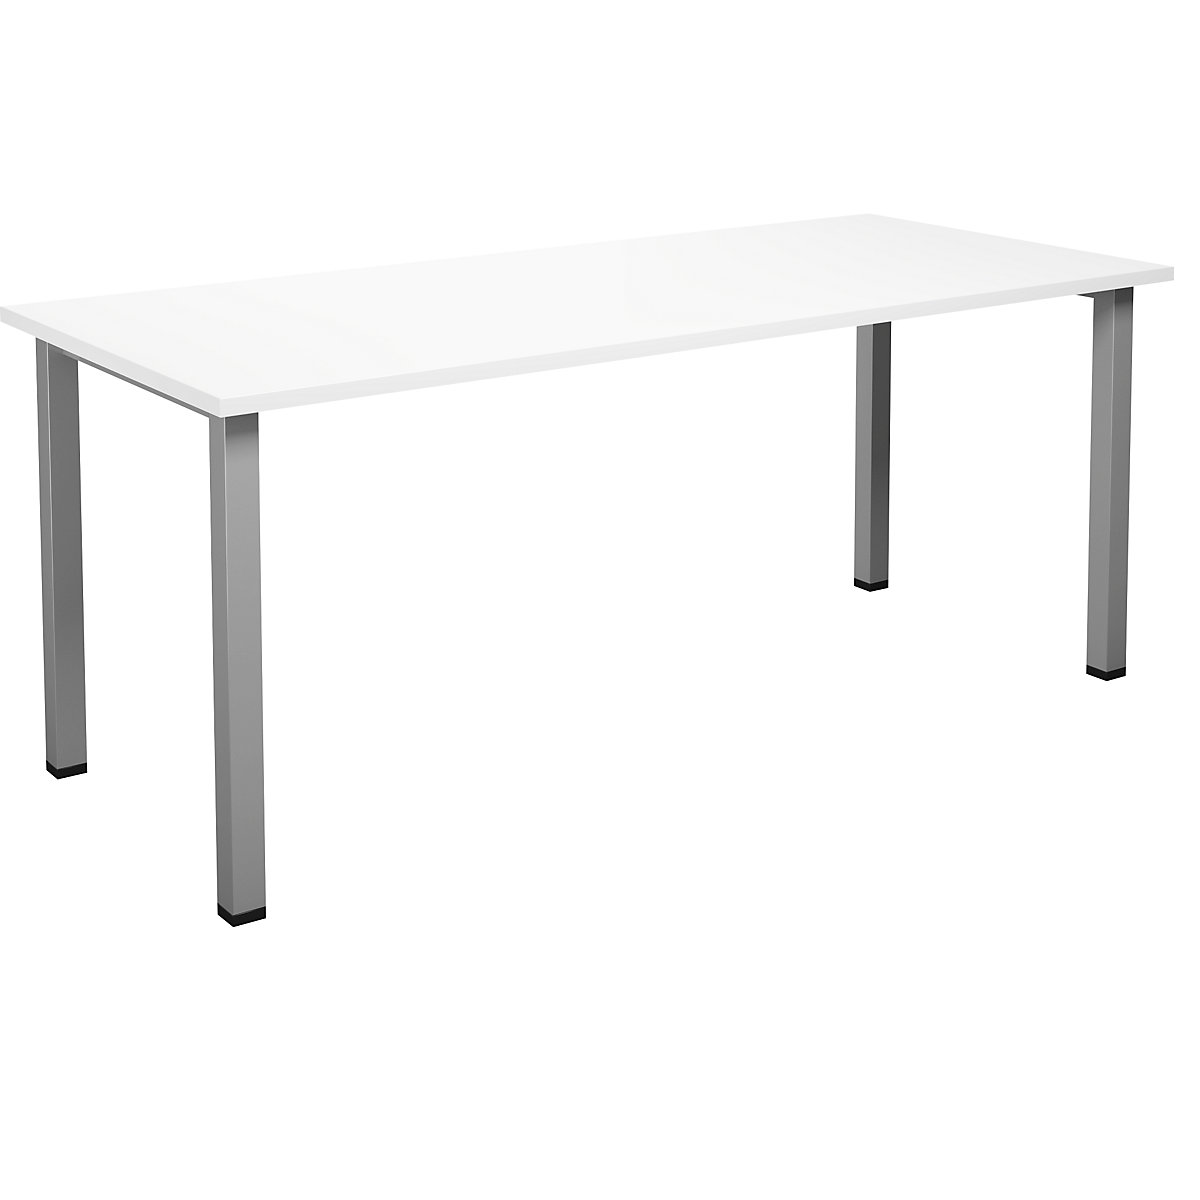 DUO-U multi-purpose desk, straight tabletop, WxD 1800 x 800 mm, white, silver-2